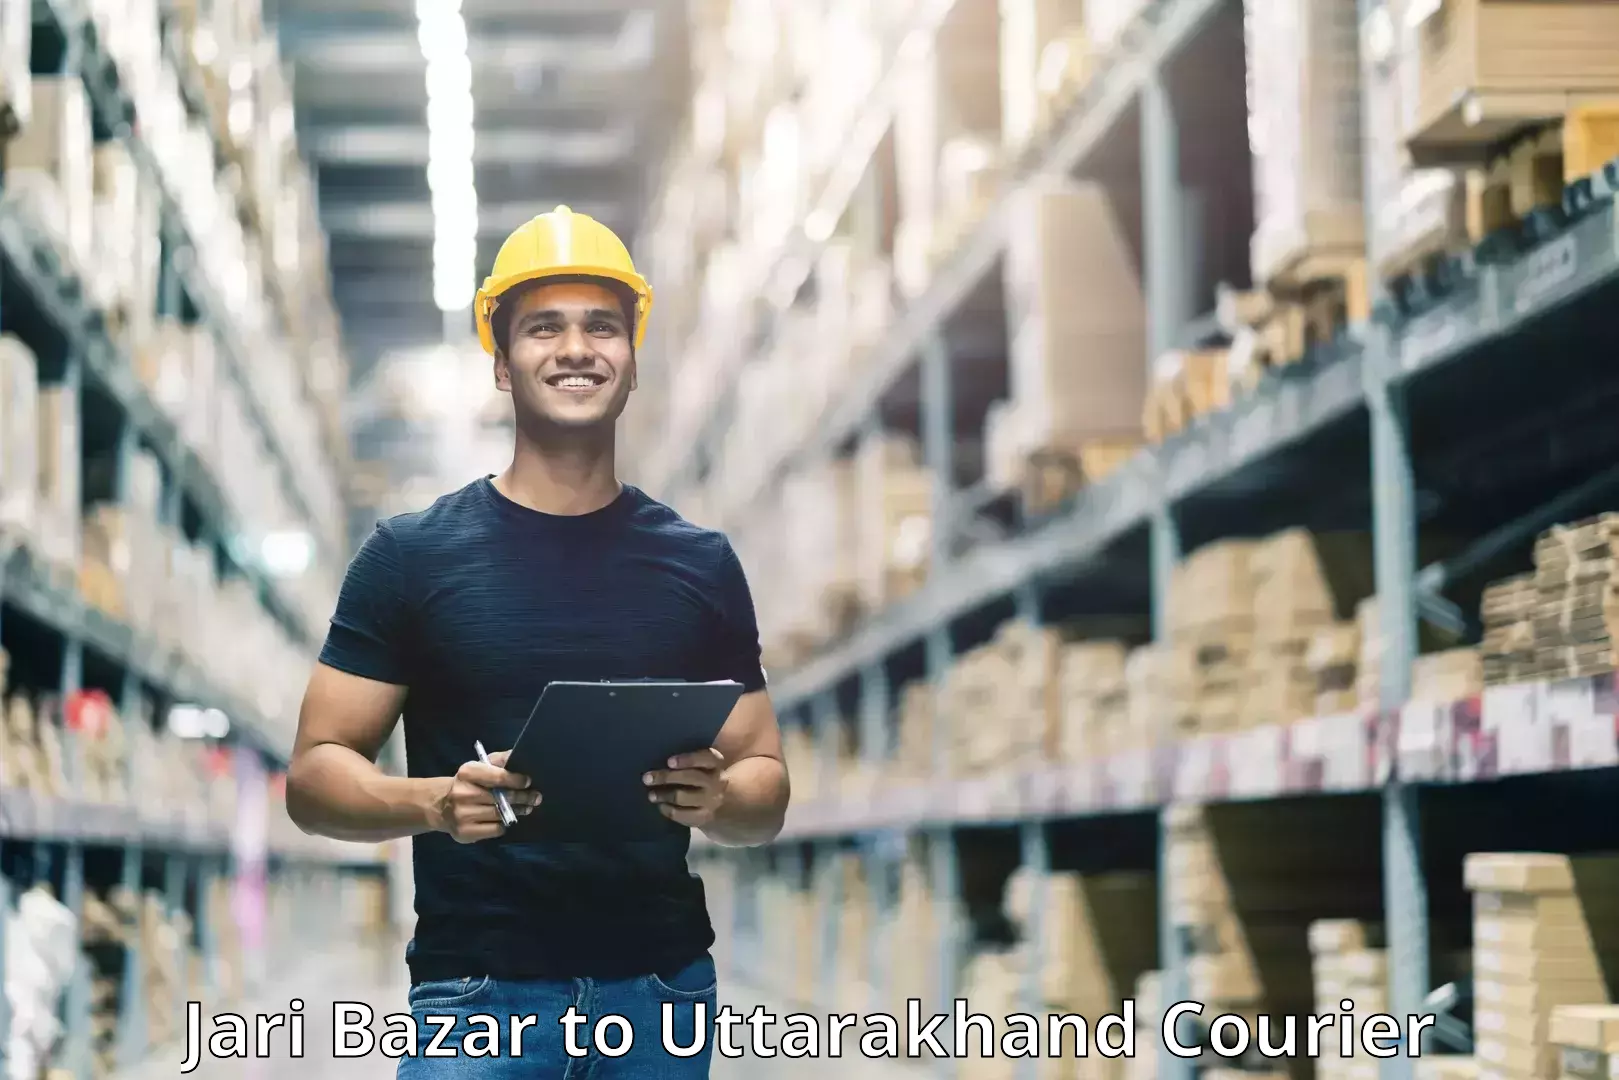 User-friendly delivery service Jari Bazar to Rishikesh